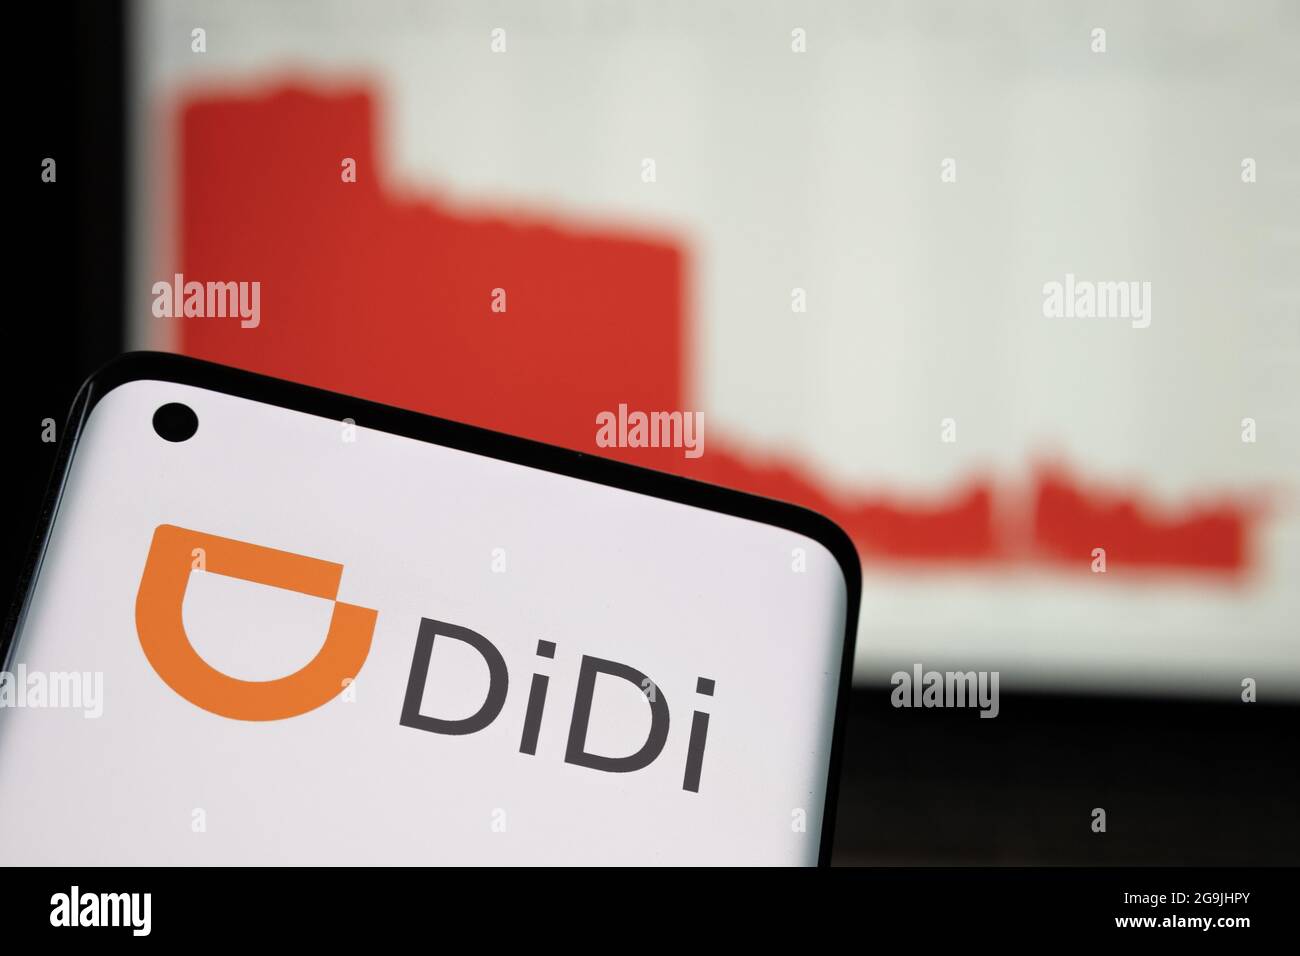 Le logo de la société Didi Chuxing Technology a été vu sur le smartphone et l'effondrement du cours des actions (5 derniers jours) sur fond flou. Concept. Stafford, Kin Banque D'Images